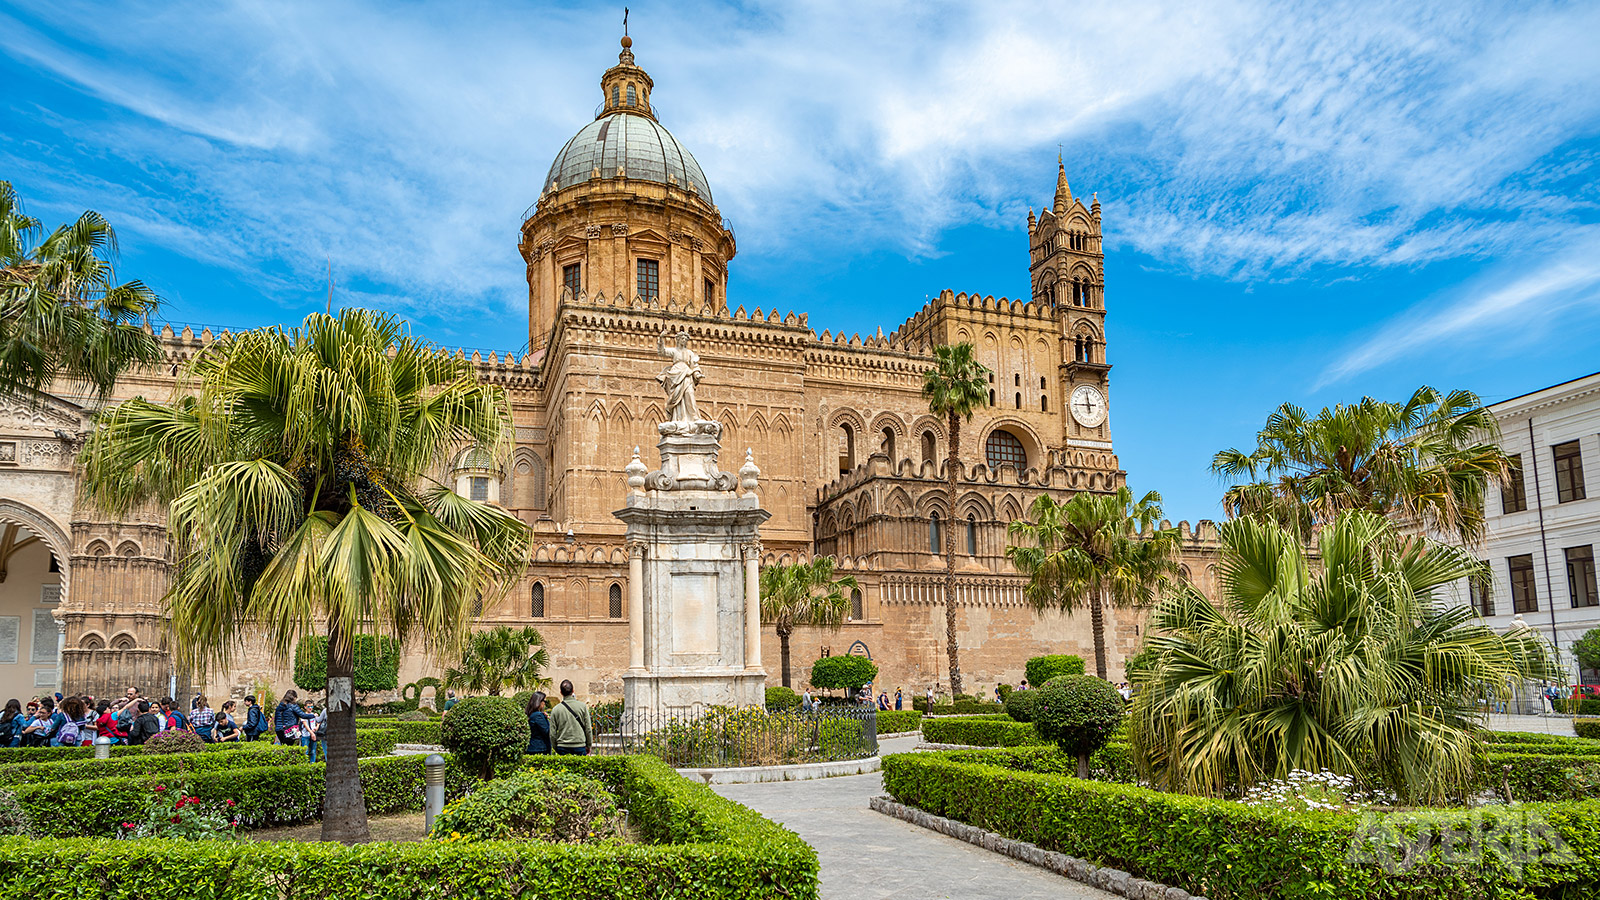 De kathedraal van Palermo daterend uit 1185 vormt het kroonjuweel van de Palermitaanse kroon